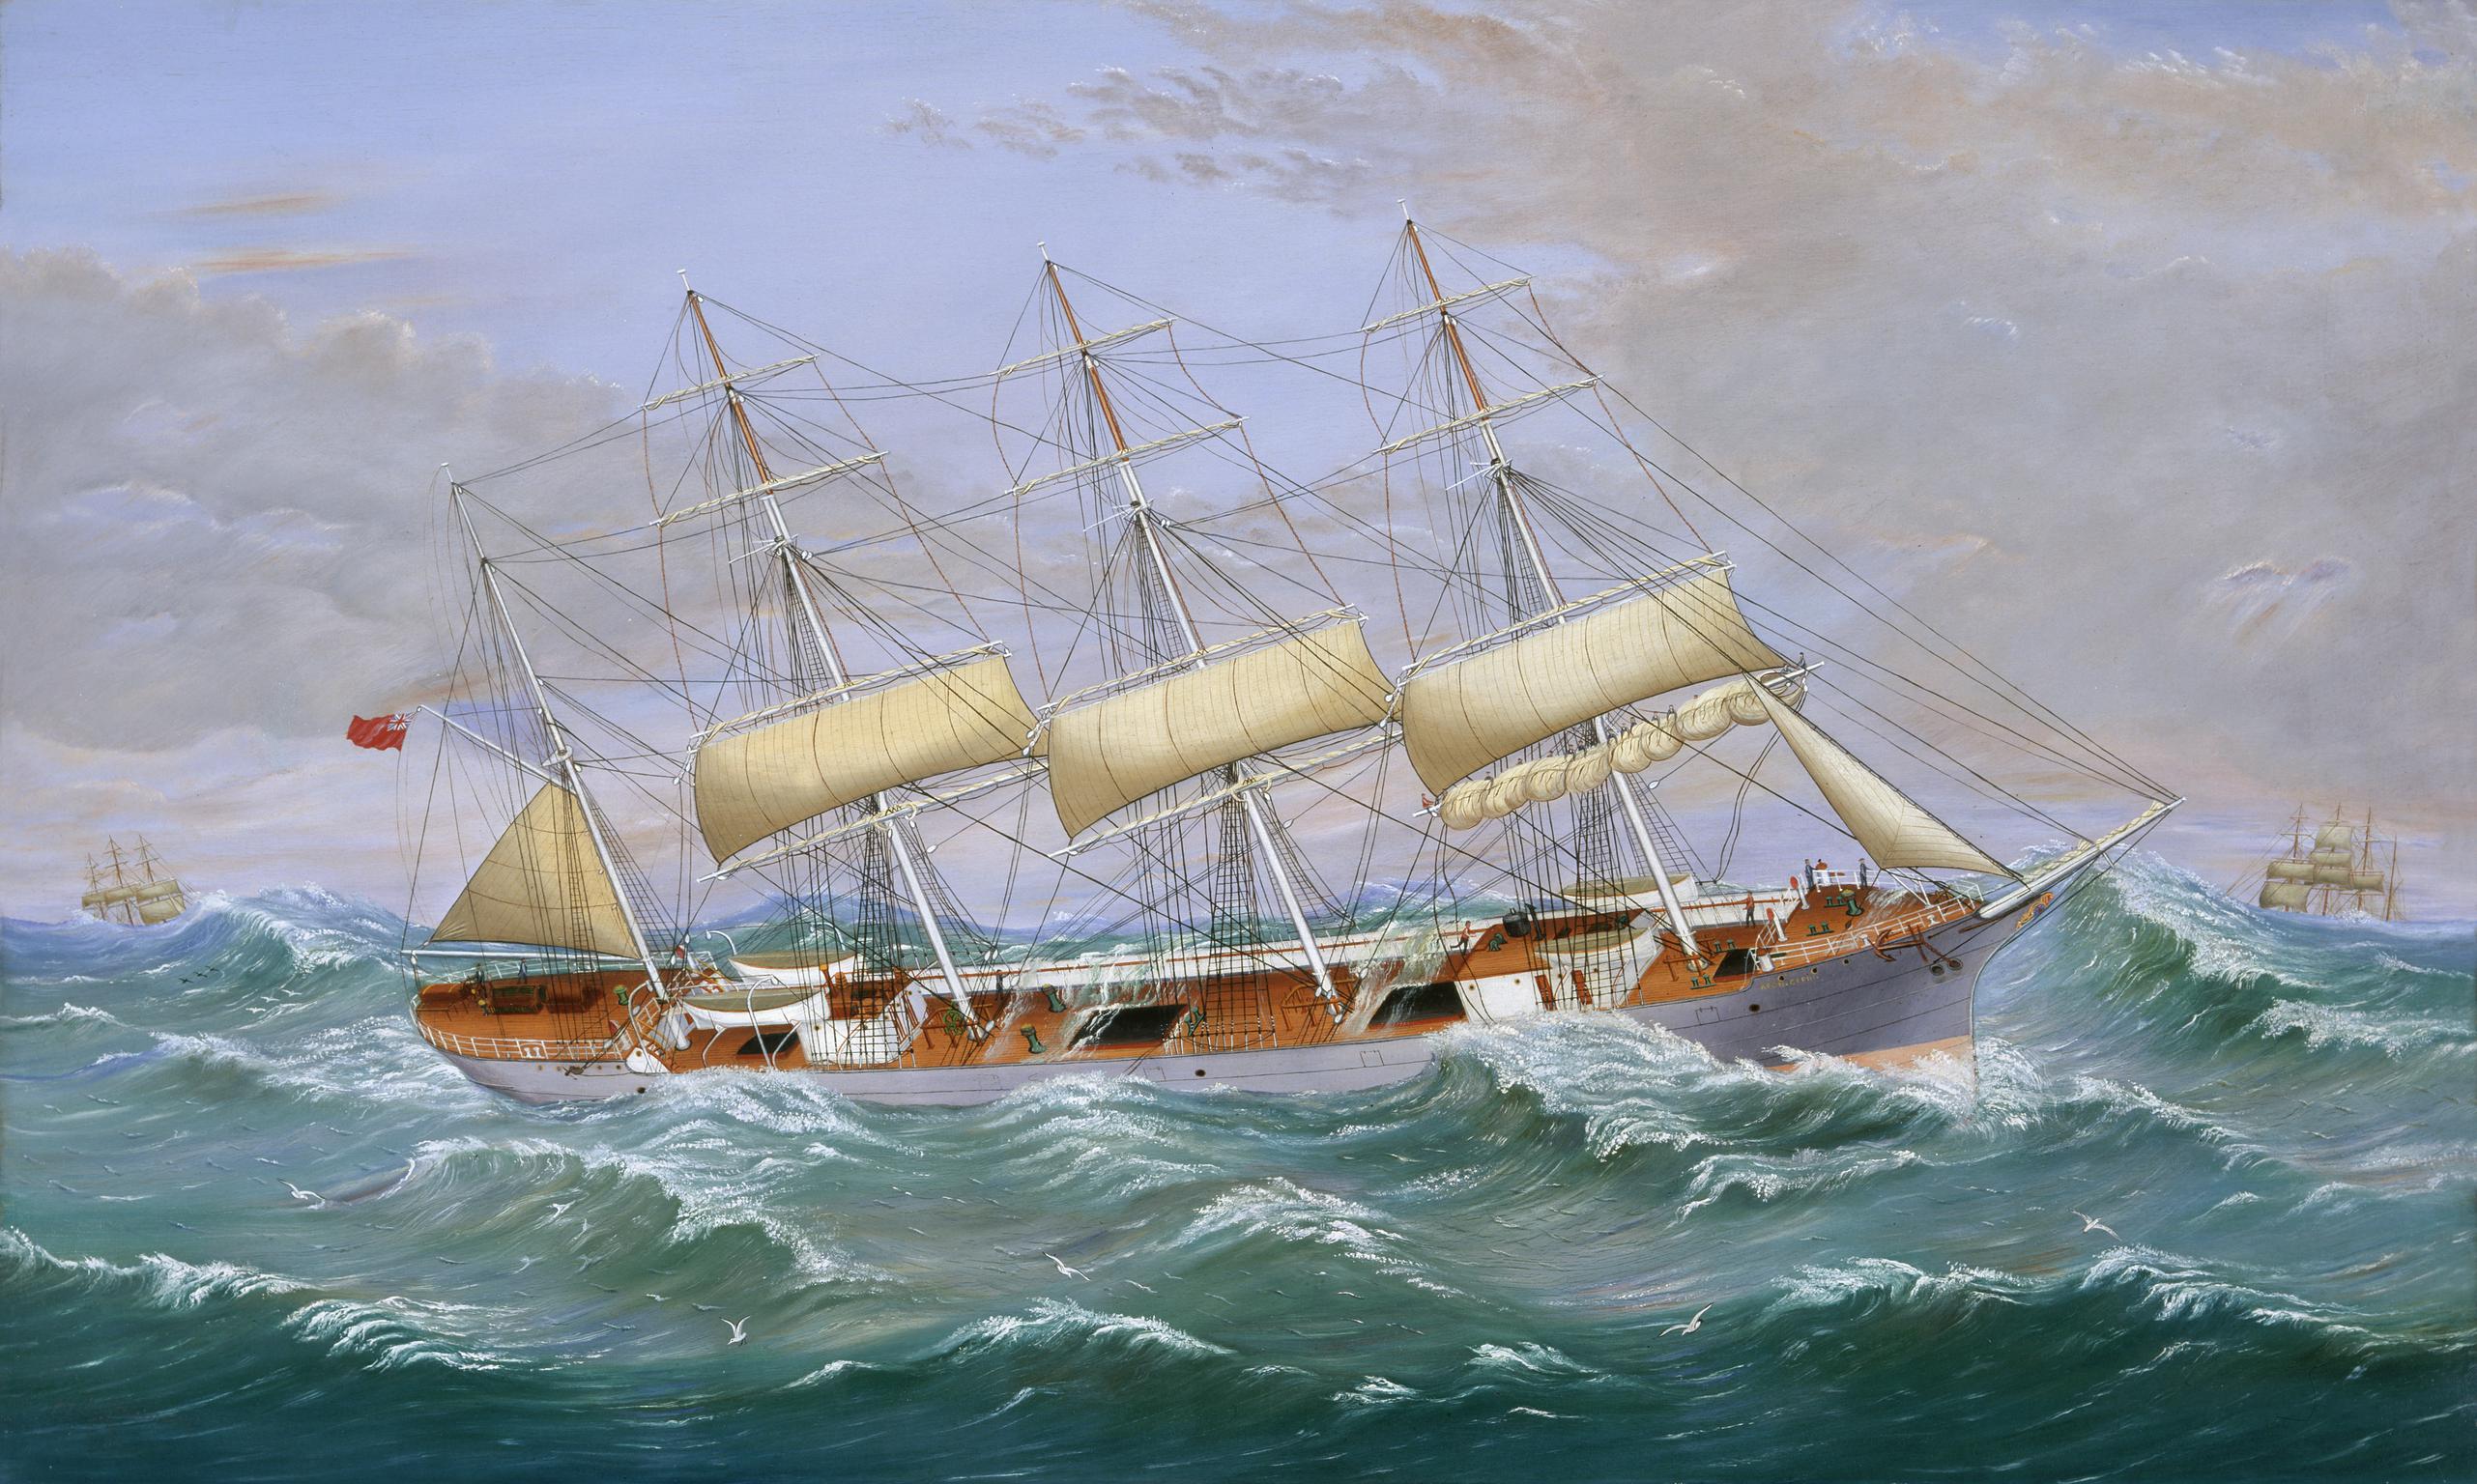 Sailship AFON CEFNI in heavy seas, painting